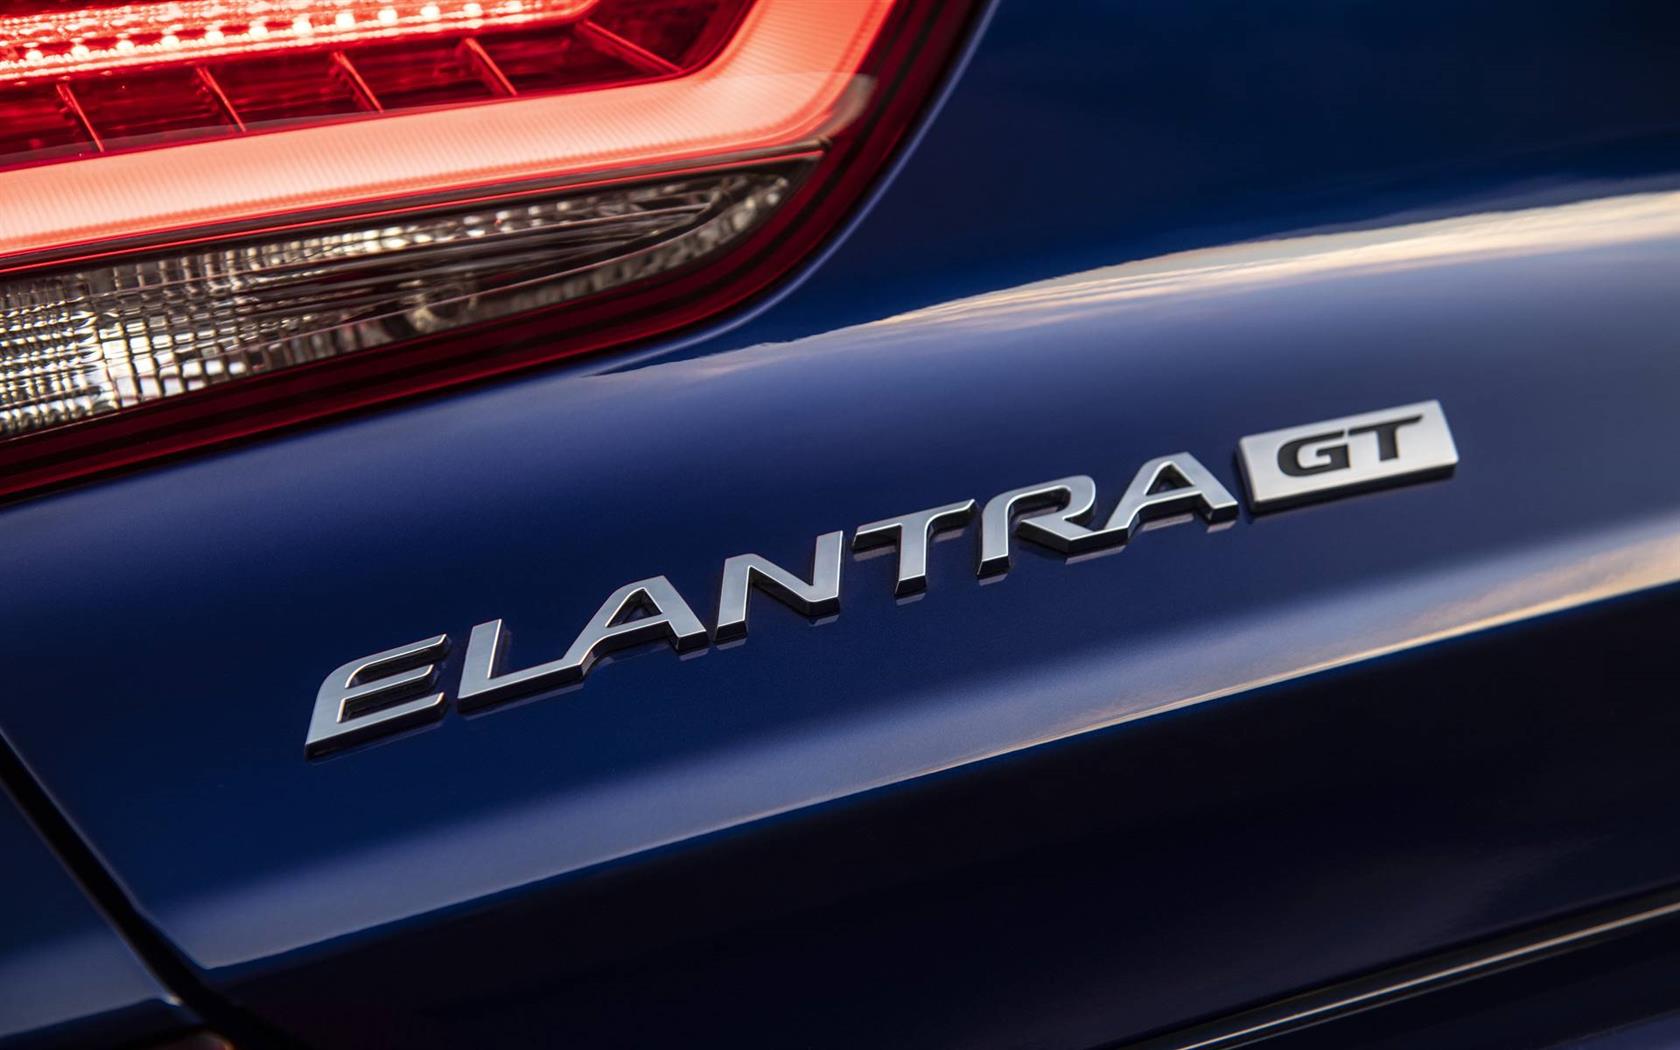 2019 Hyundai Elantra GT N Line